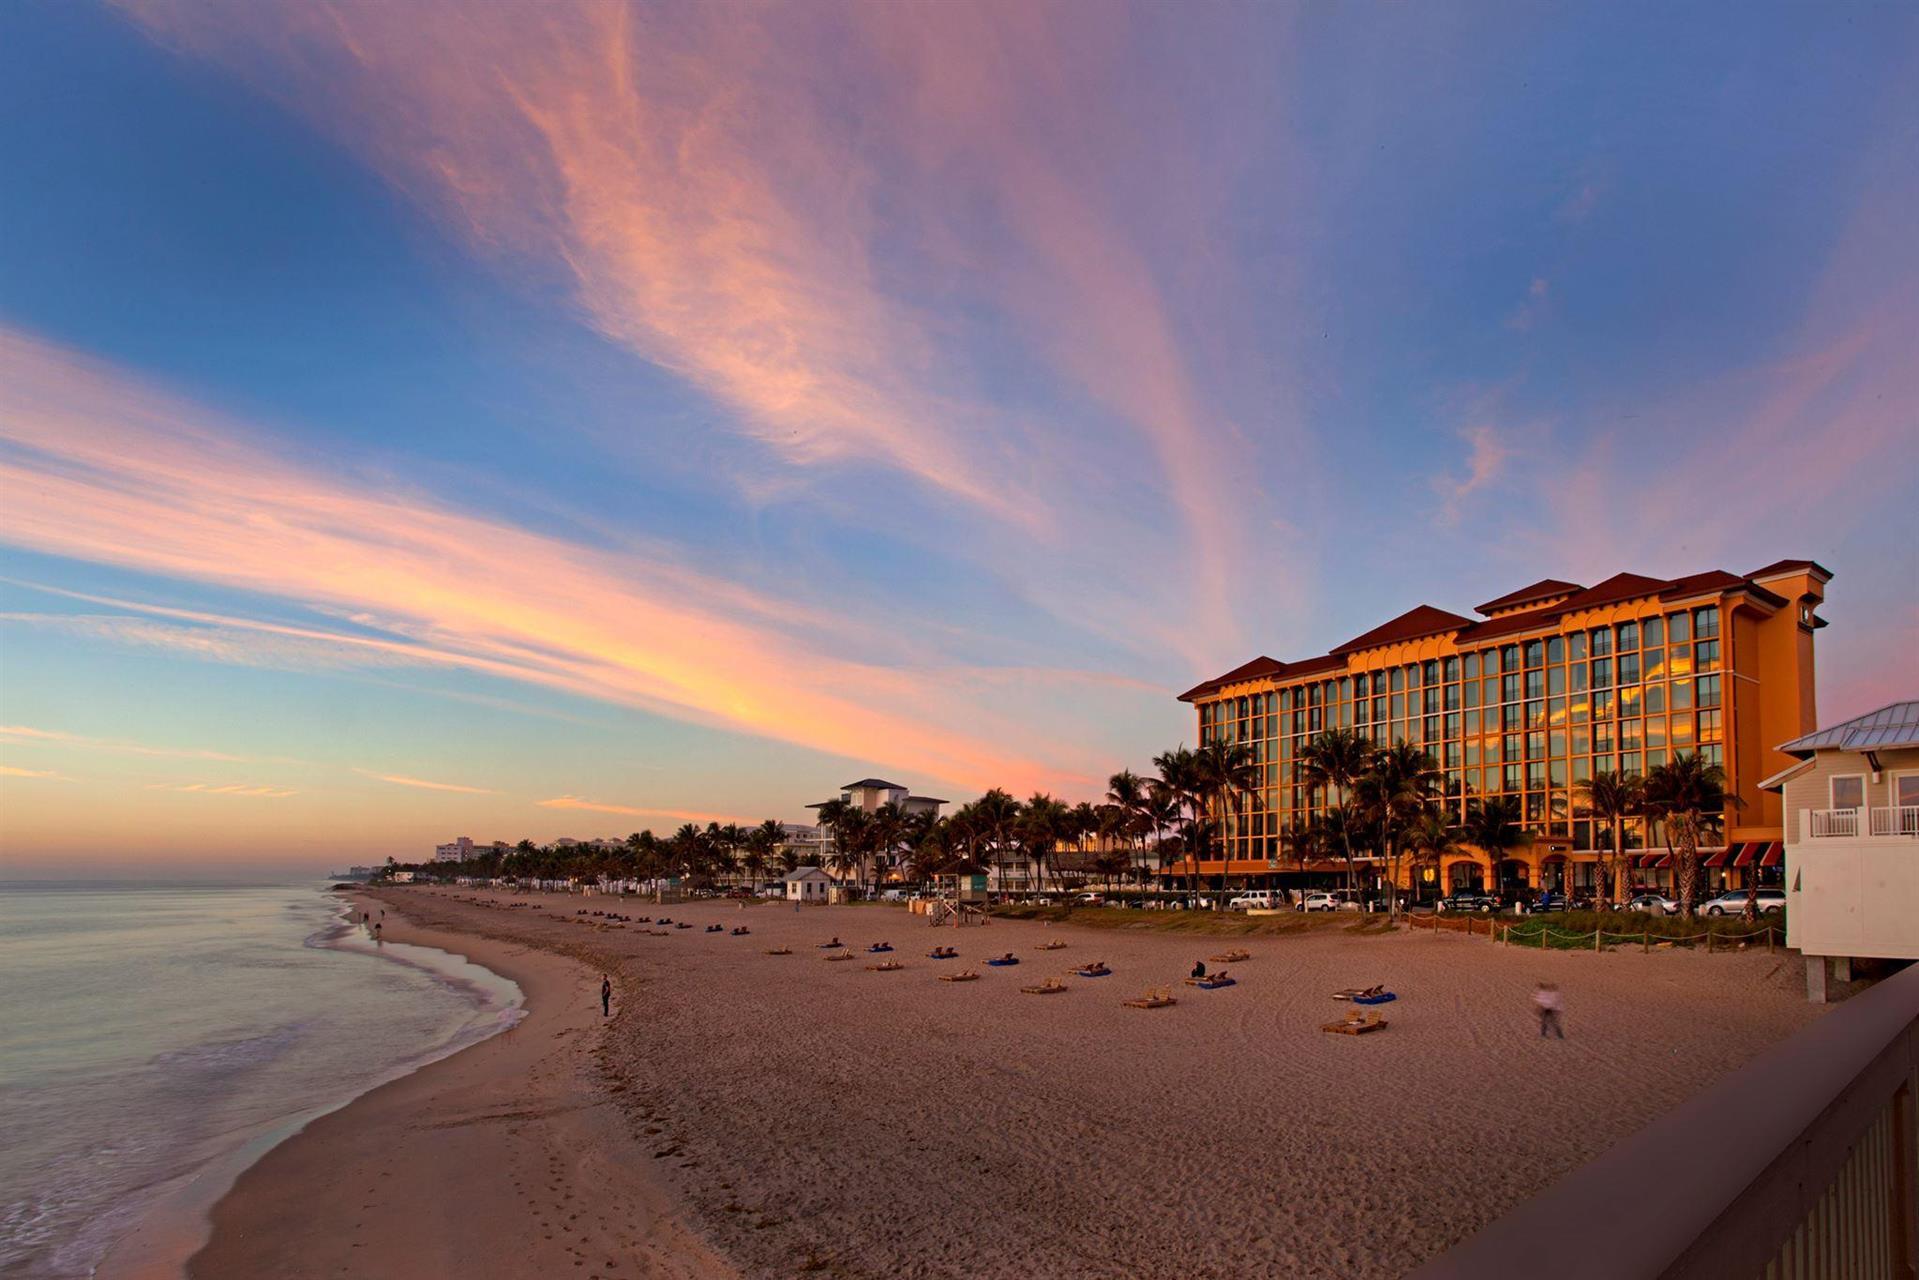 Wyndham Deerfield Beach Resort, a Wyndham Meetings Collection Hotel in Deerfield Beach, FL